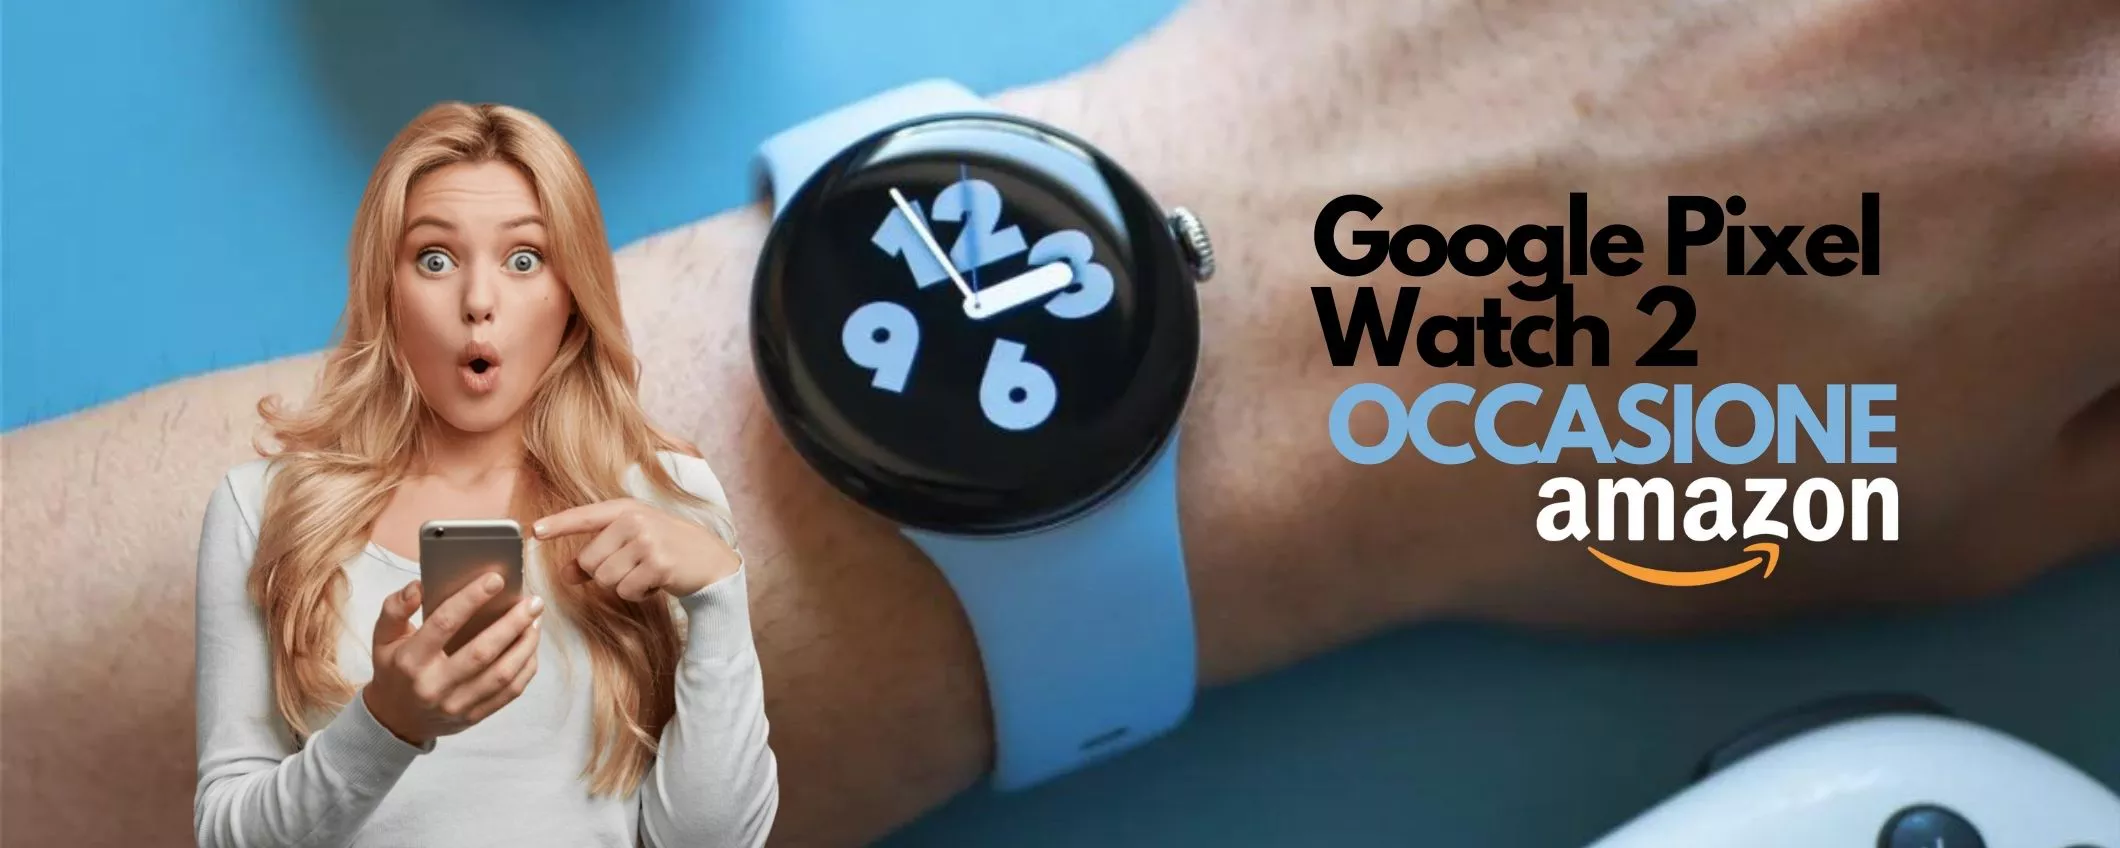 Google Pixel Watch 2 a prezzo SUPER su Amazon: occasione IMPERDIBILE, corri!